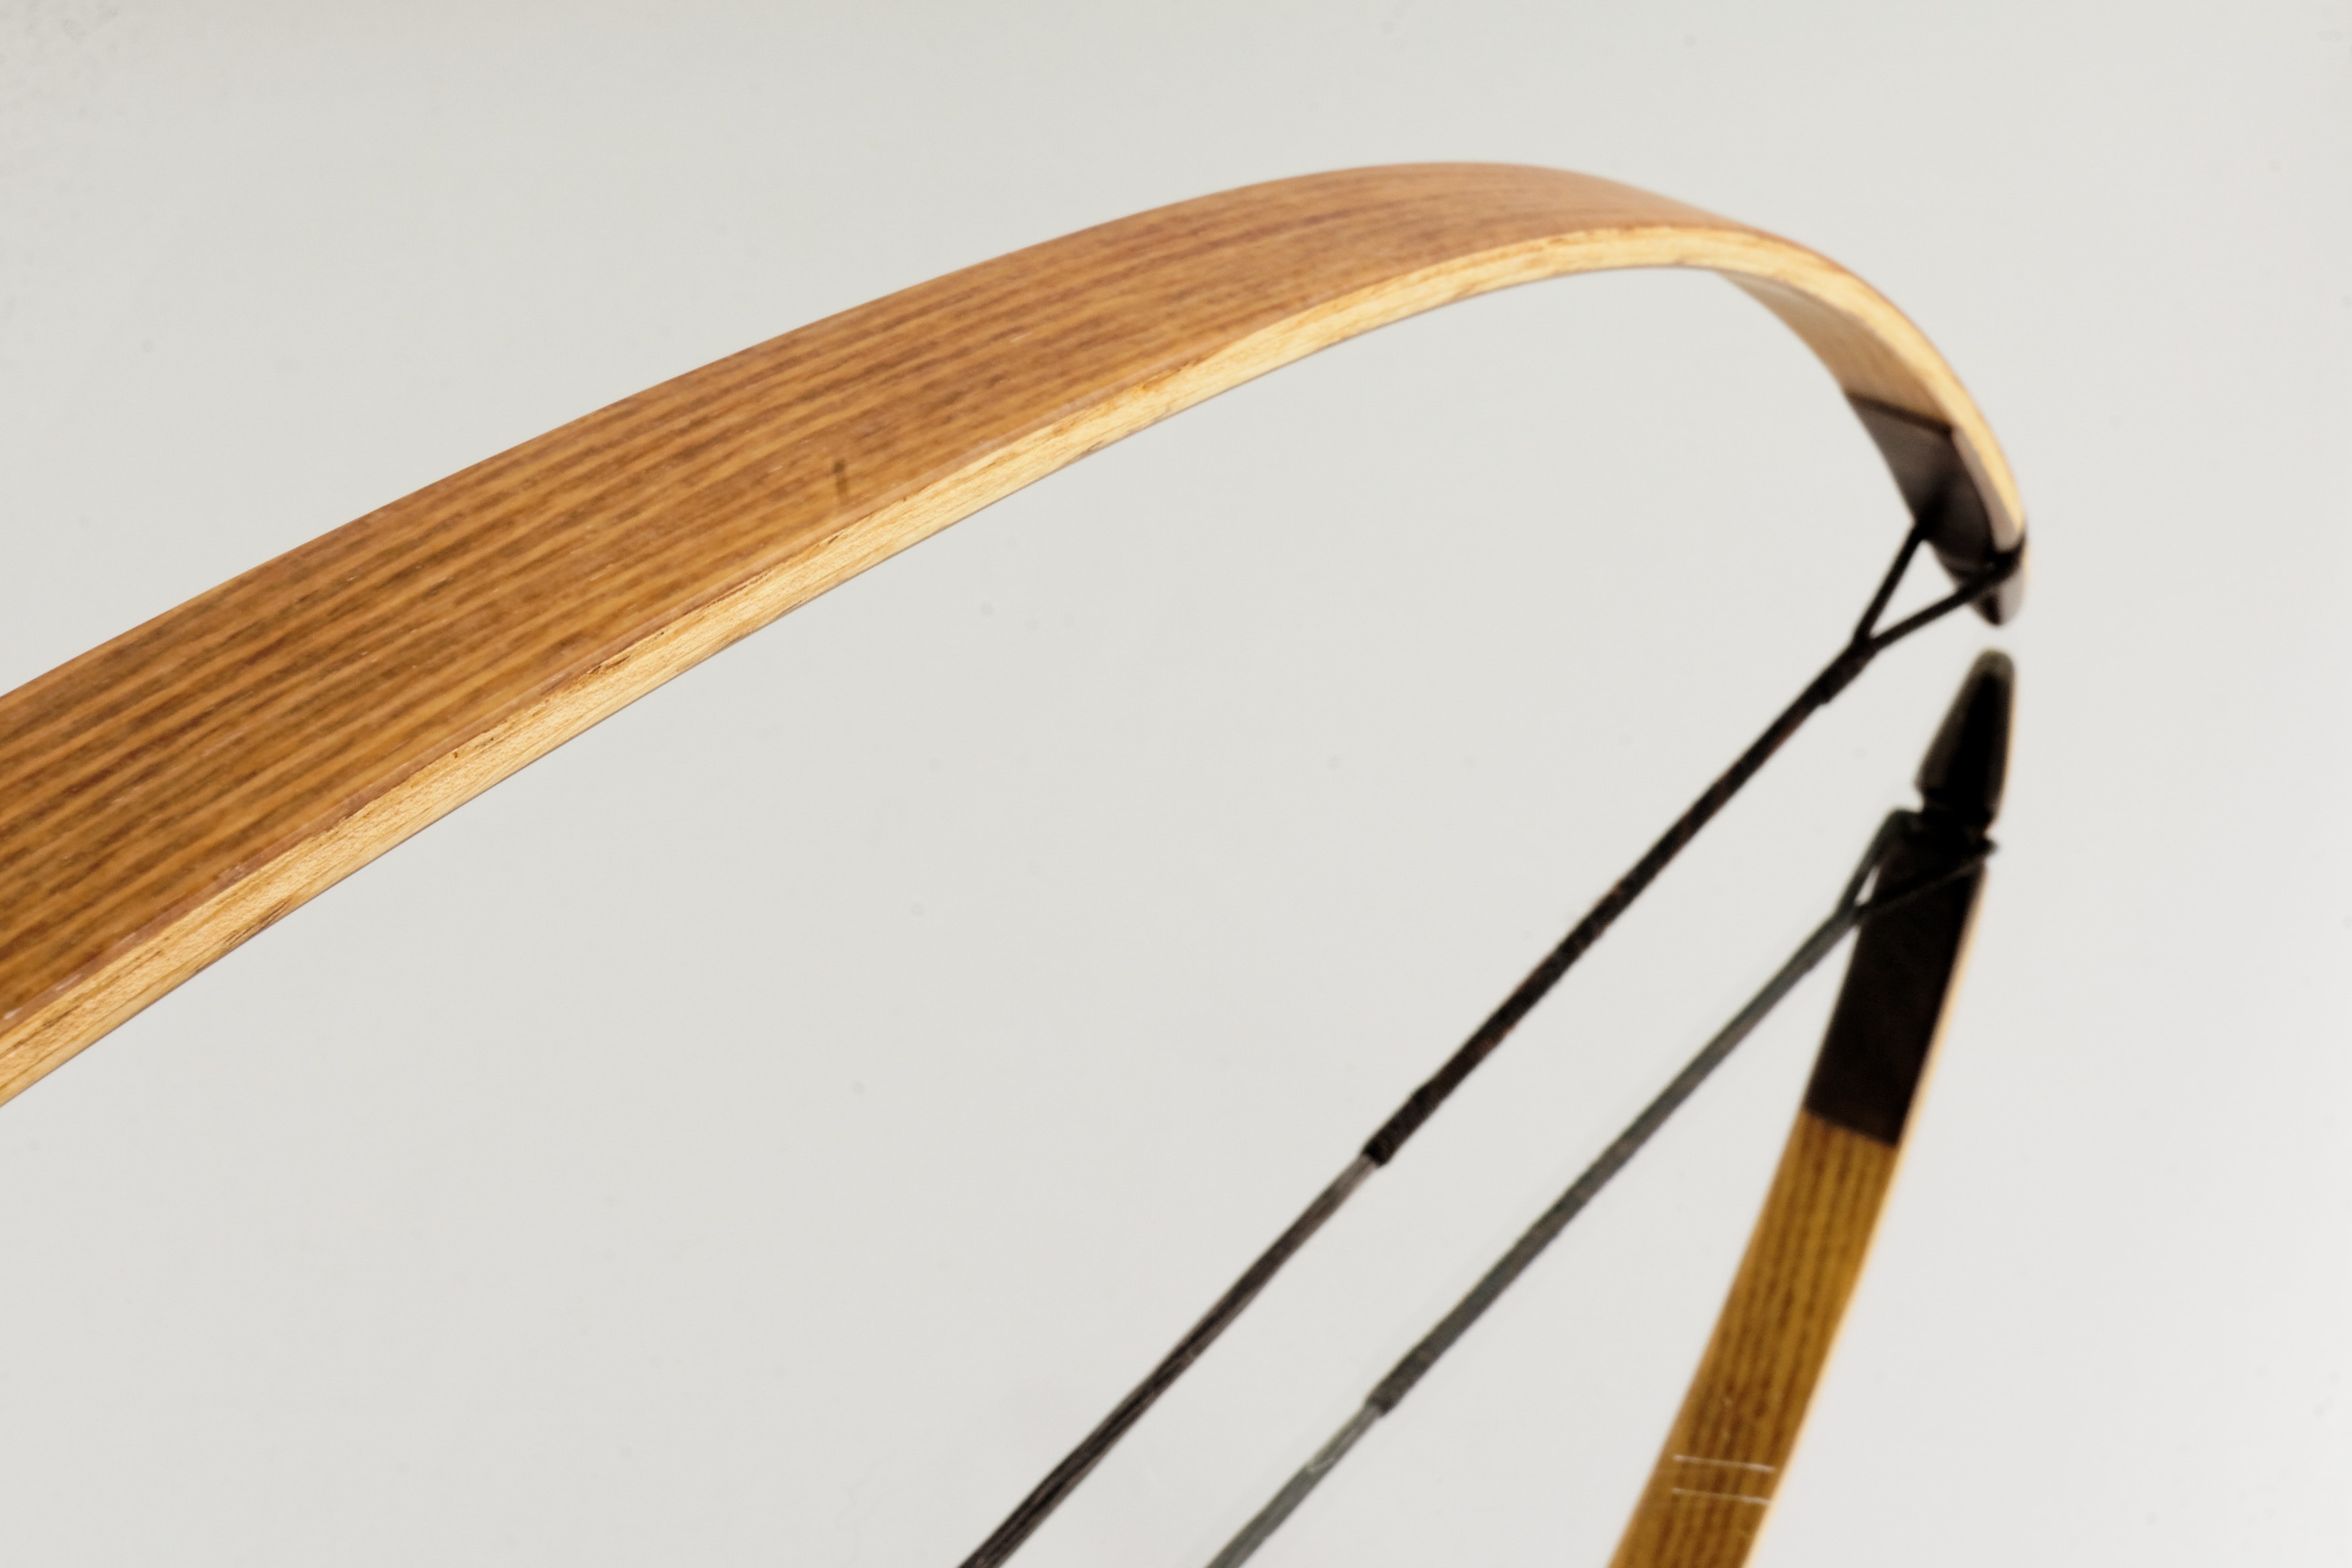 A wooden stick. Лук Drumstick. Wooden Stick. Дуга оружие.